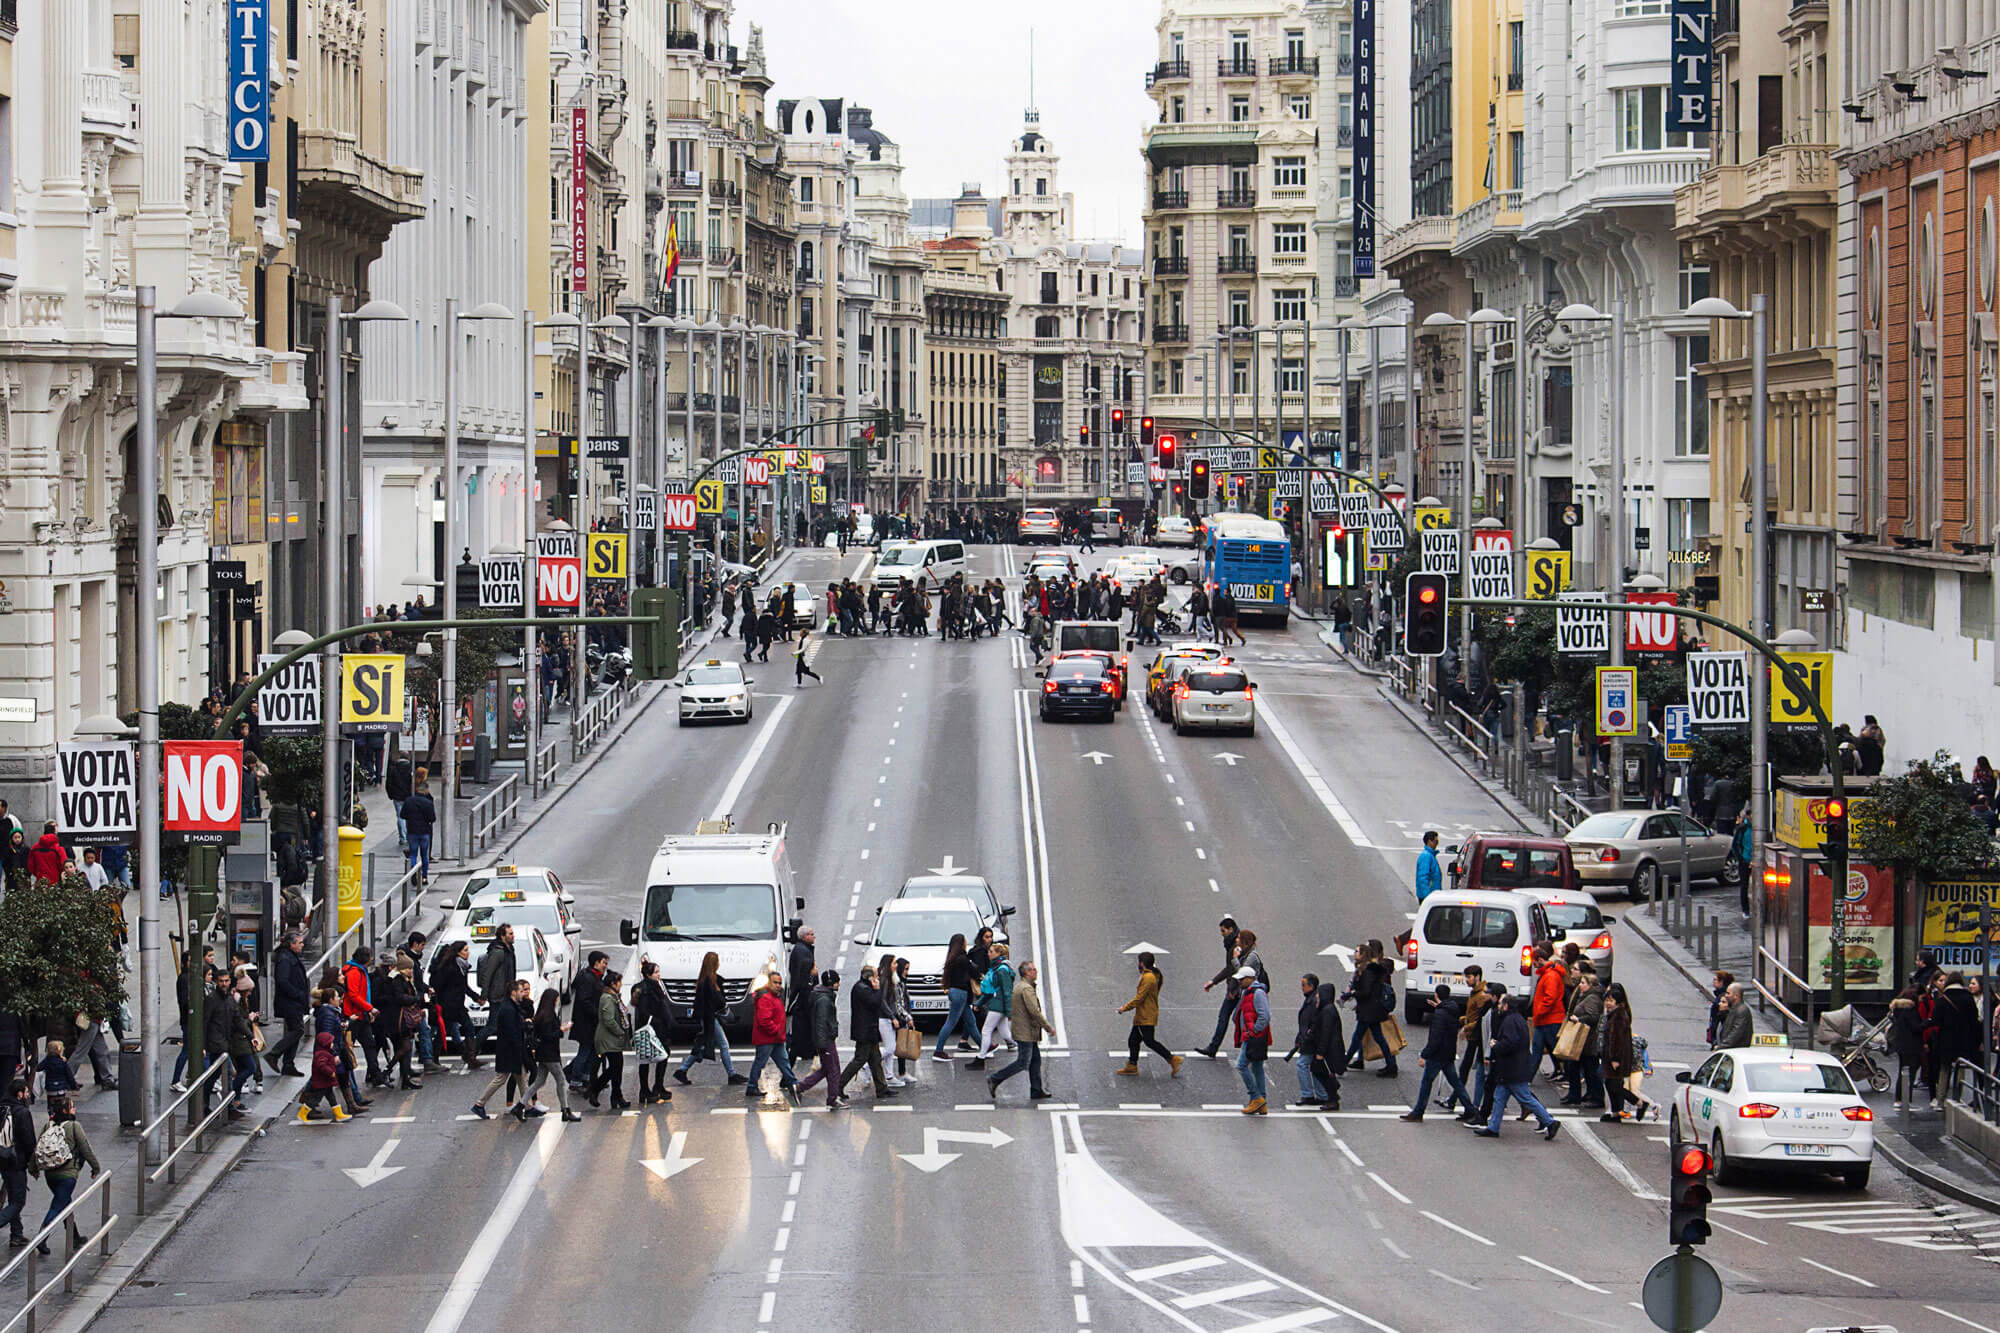 Vista panorámica de la calle Gran Vía donde se ven dos cruces de peatones con numerosas personas cruzando. A los lados de la calle hay banderolas en las farolas con la campaña de Decide Madrid vota si vota no